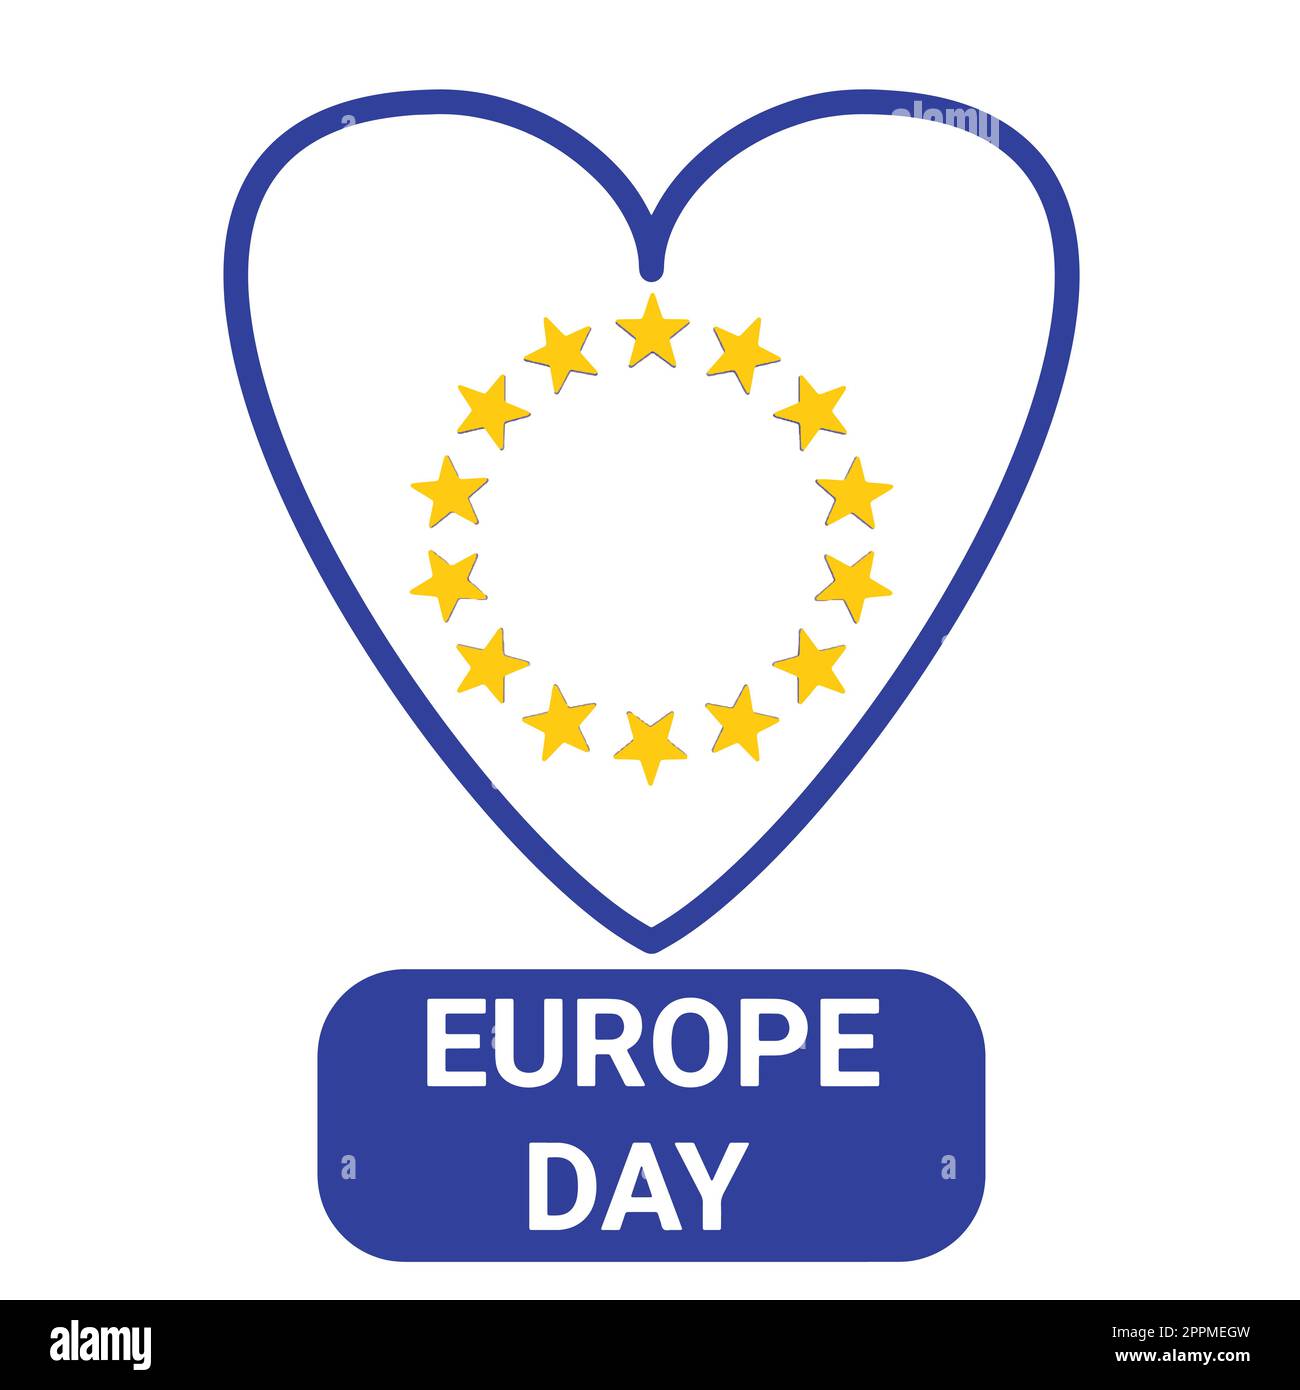 La Journée de l'Europe est une journée consacrée à la paix et à l'unité en Europe, célébrée le 5 mai par le Conseil de l'Europe et le 9 mai par l'Union européenne Illustration de Vecteur